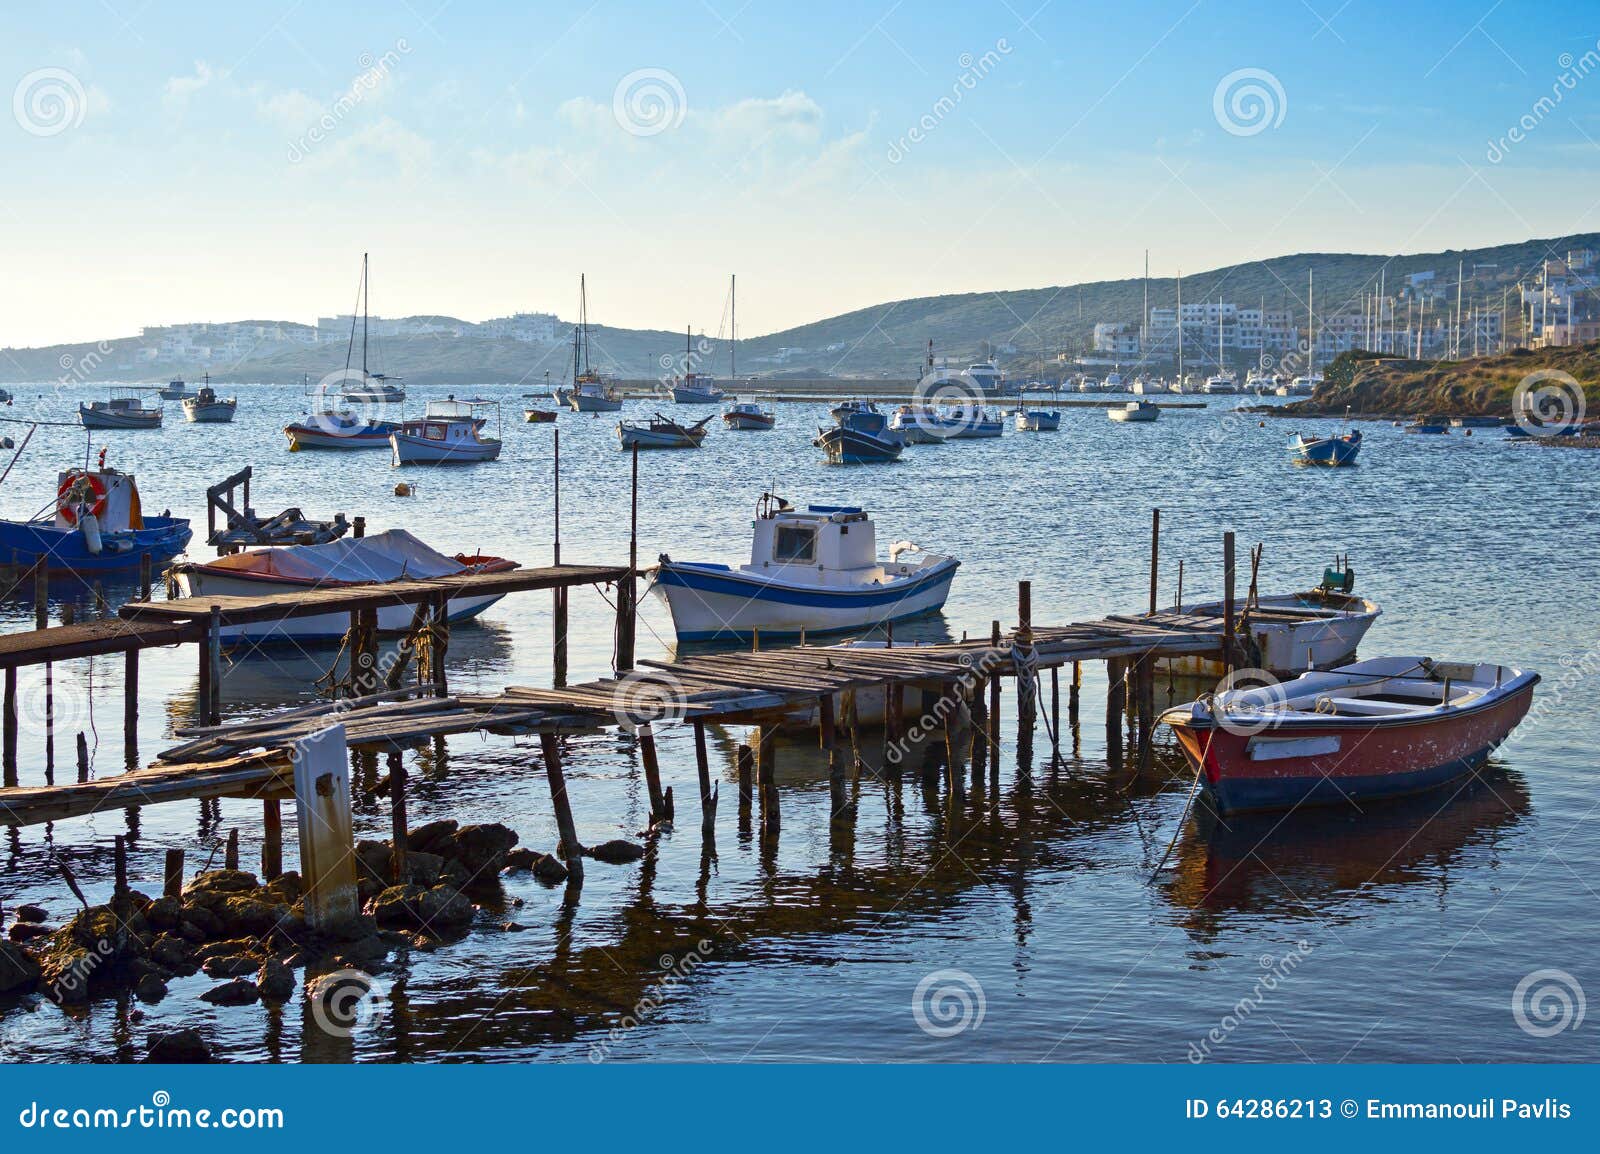 Malerischer Hafen. Ansicht eines hölzernen Piers und der alten Fischerboote an einem malerischen Hafen in Griechenland